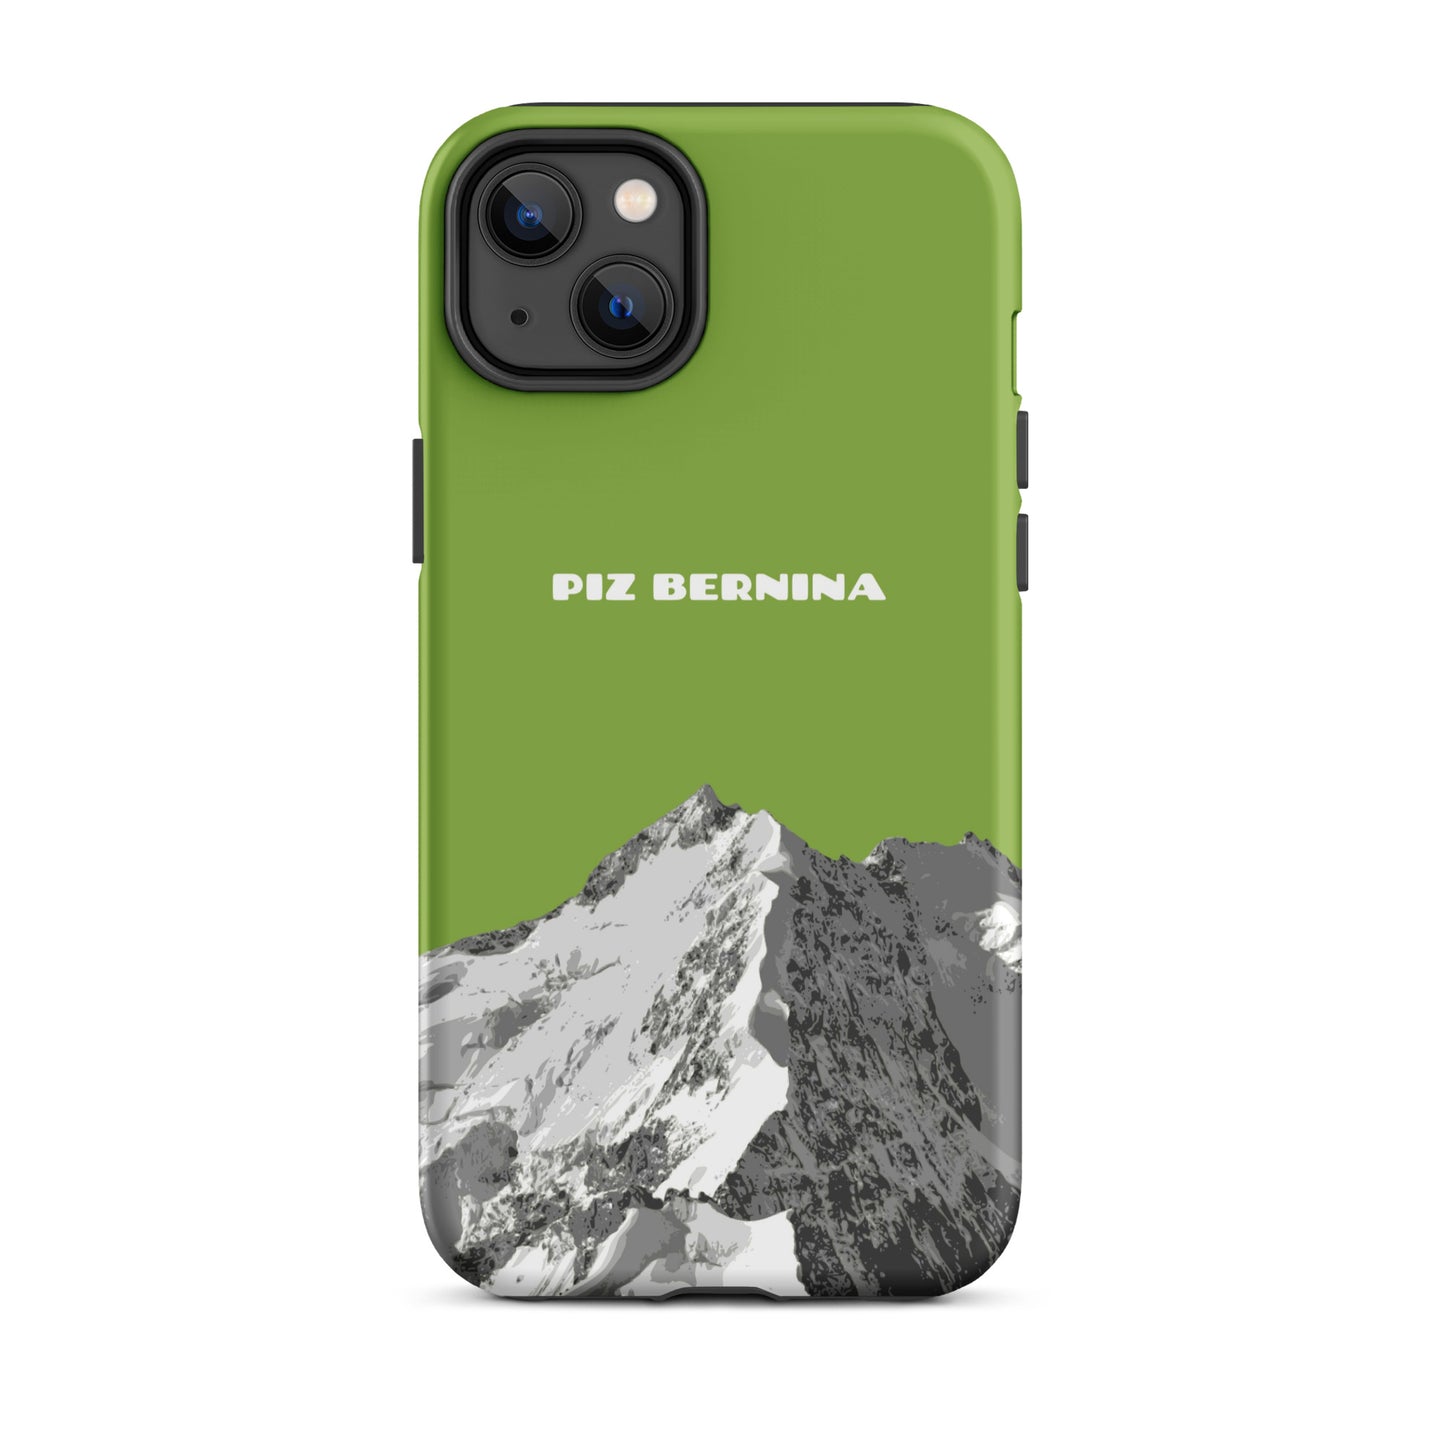 Hülle für das iPhone 14 Plus von Apple in der Farbe Gelbgrün, dass den Piz Bernina in Graubünden zeigt.